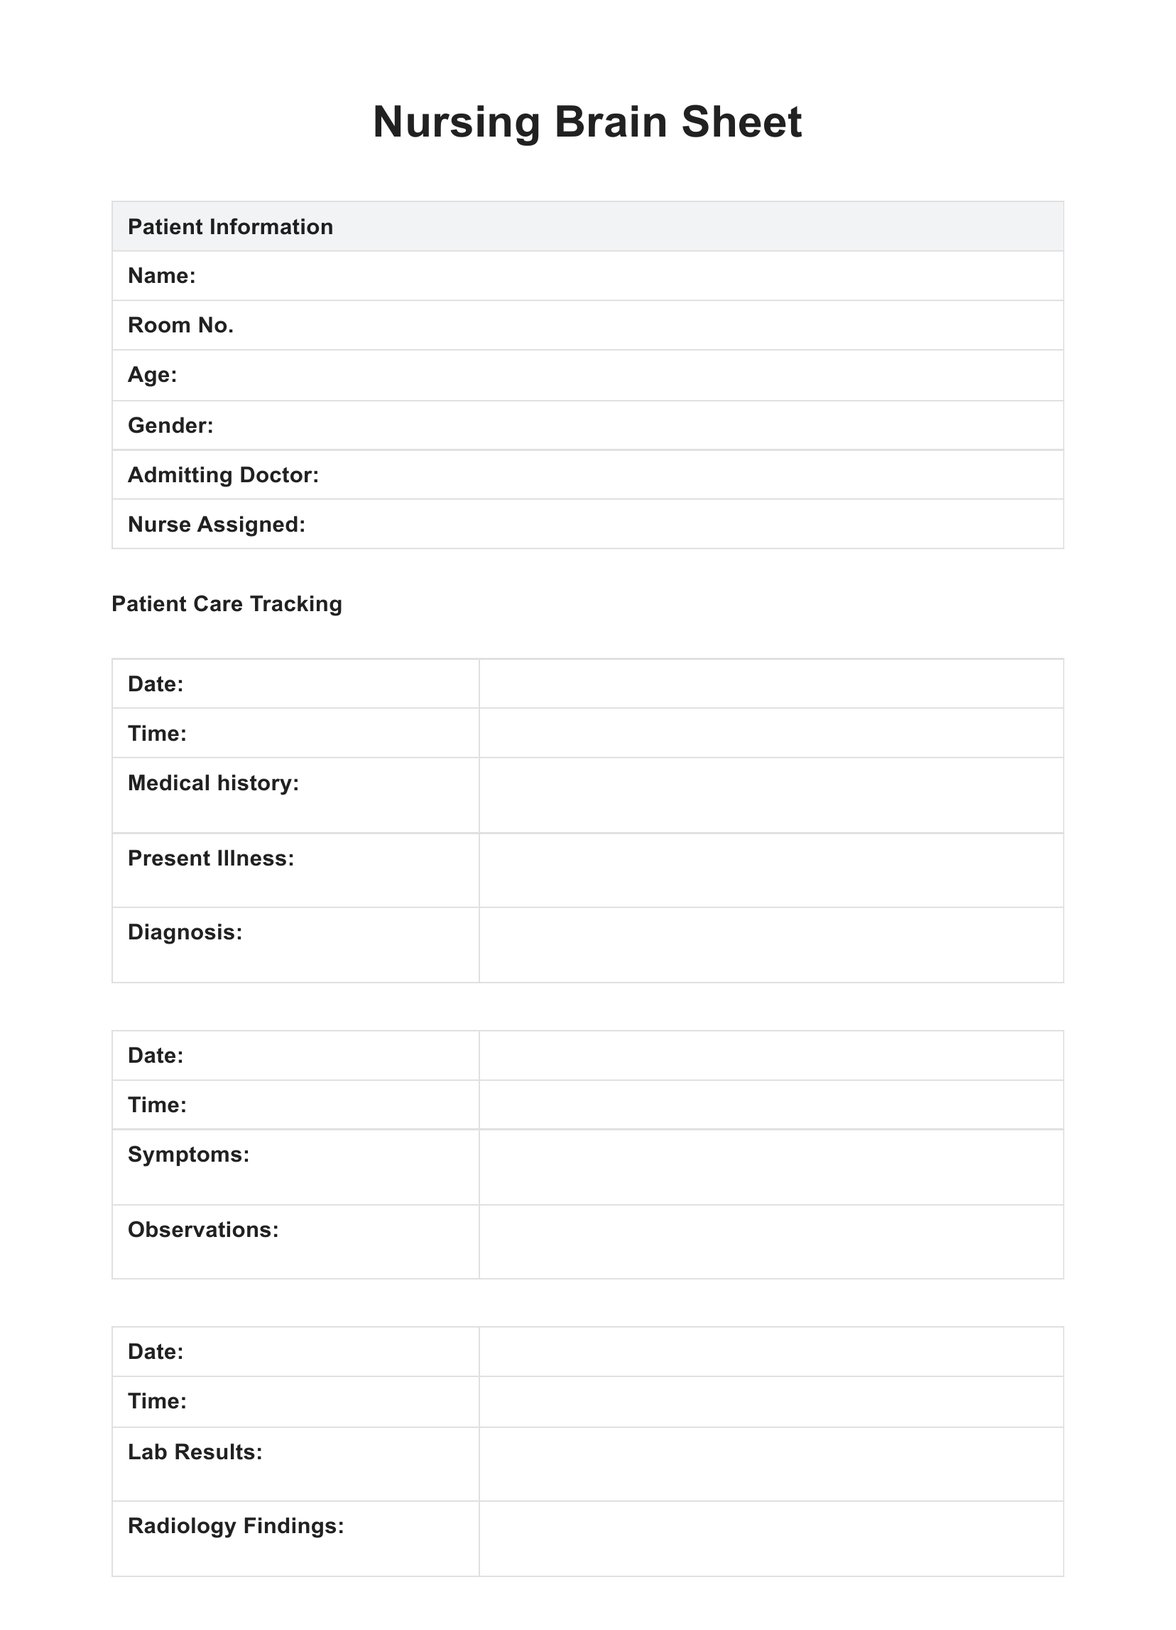 Nursing Brain Sheet PDF Example